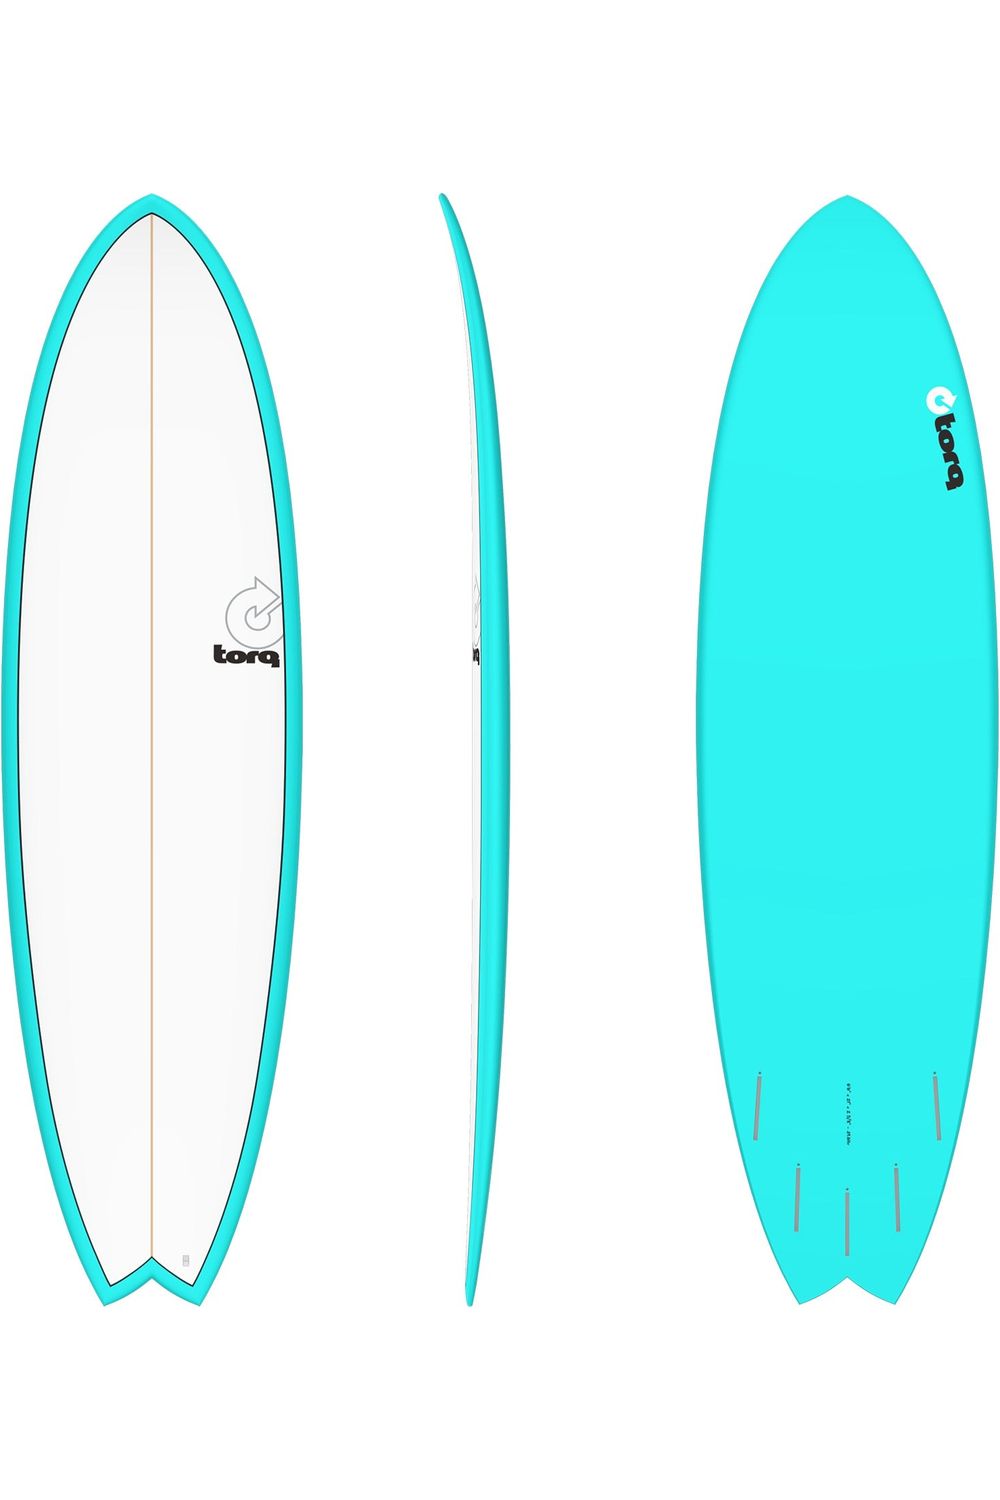 Torq TET Mod Fish Surfboard in Pinline Miami Blue